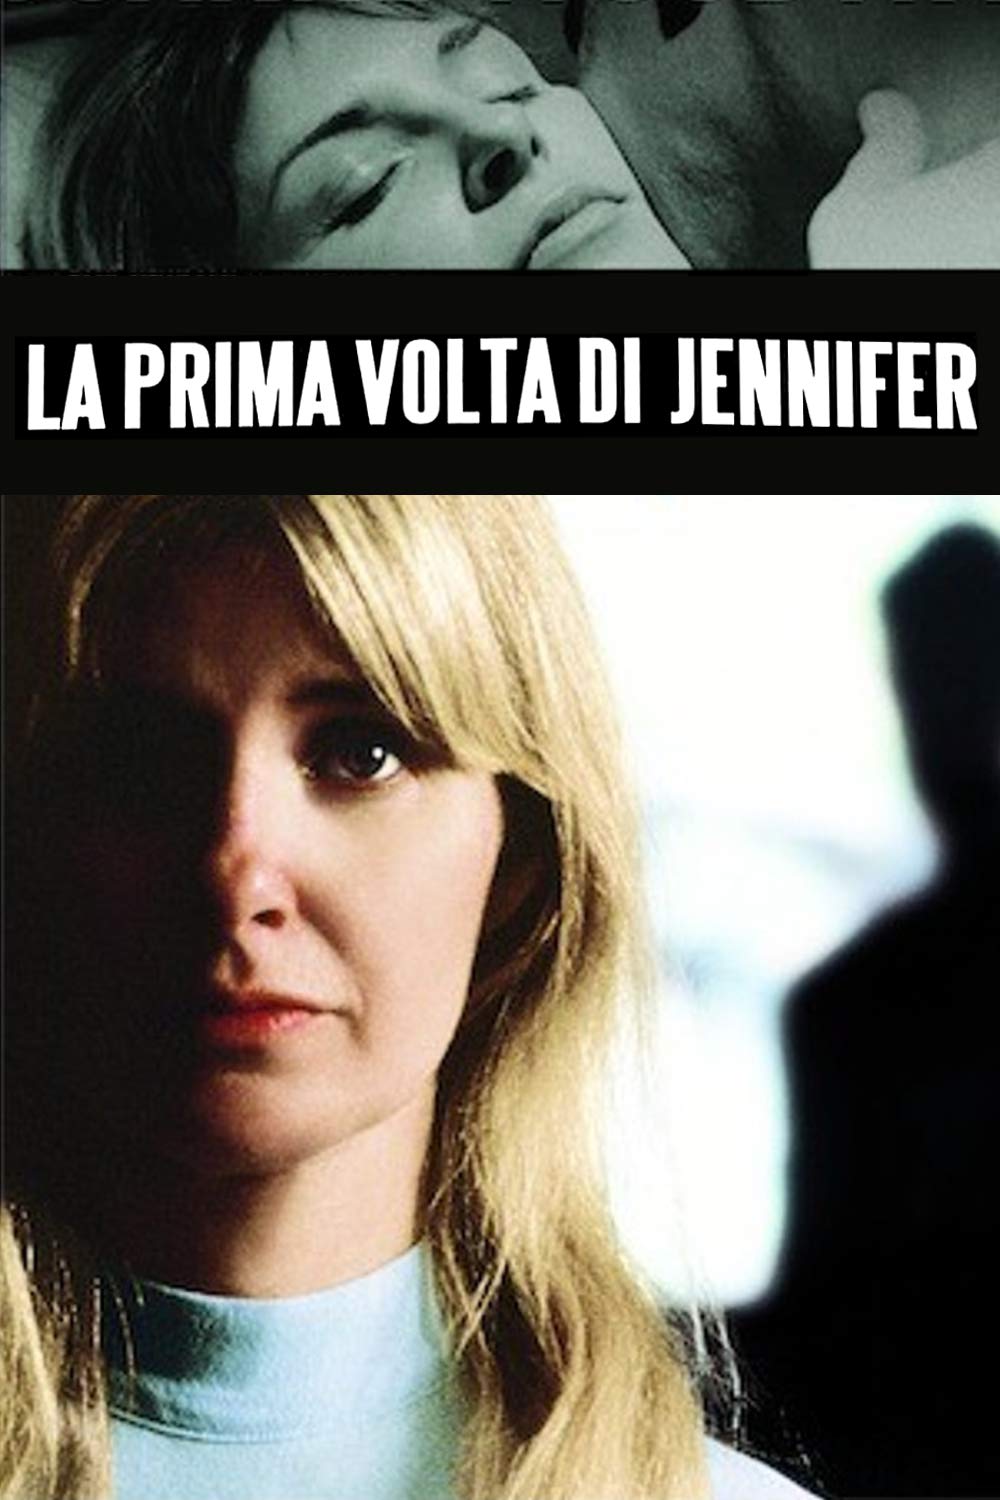 La prima volta di Jennifer (1968)